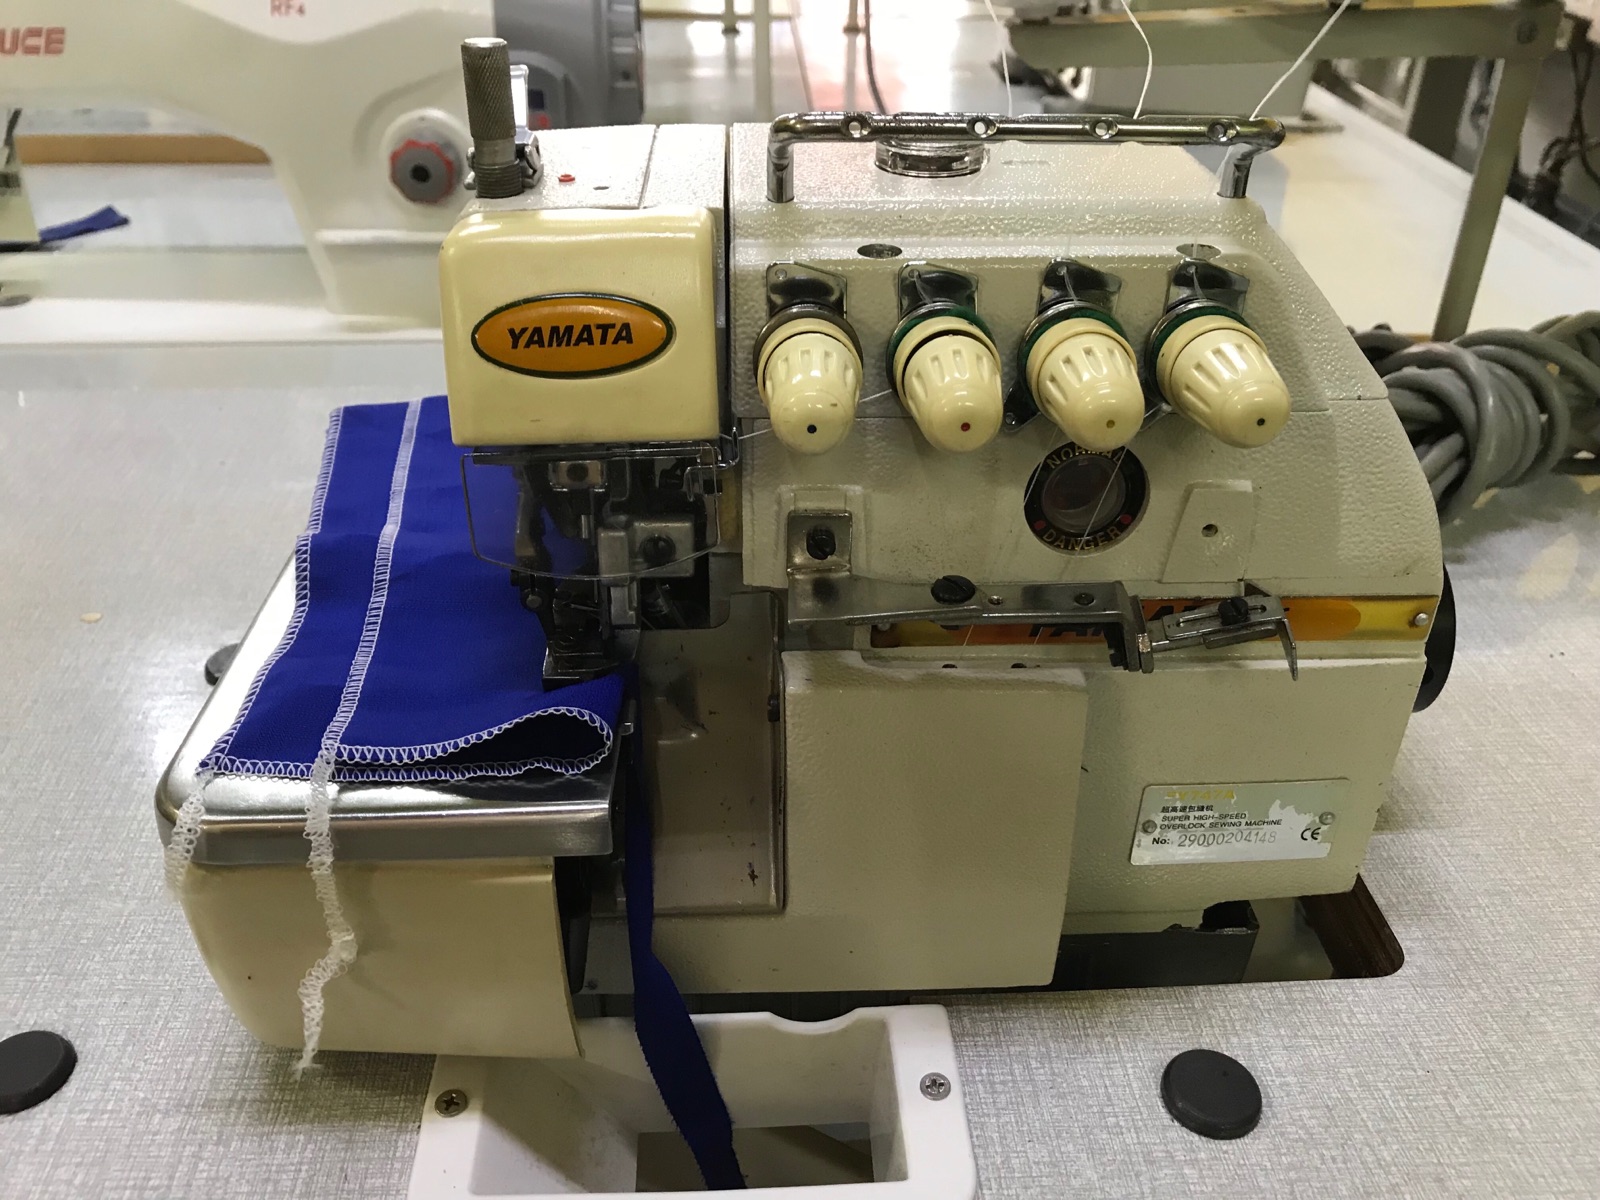 2nd Yamata Overlock Sewing Machine 